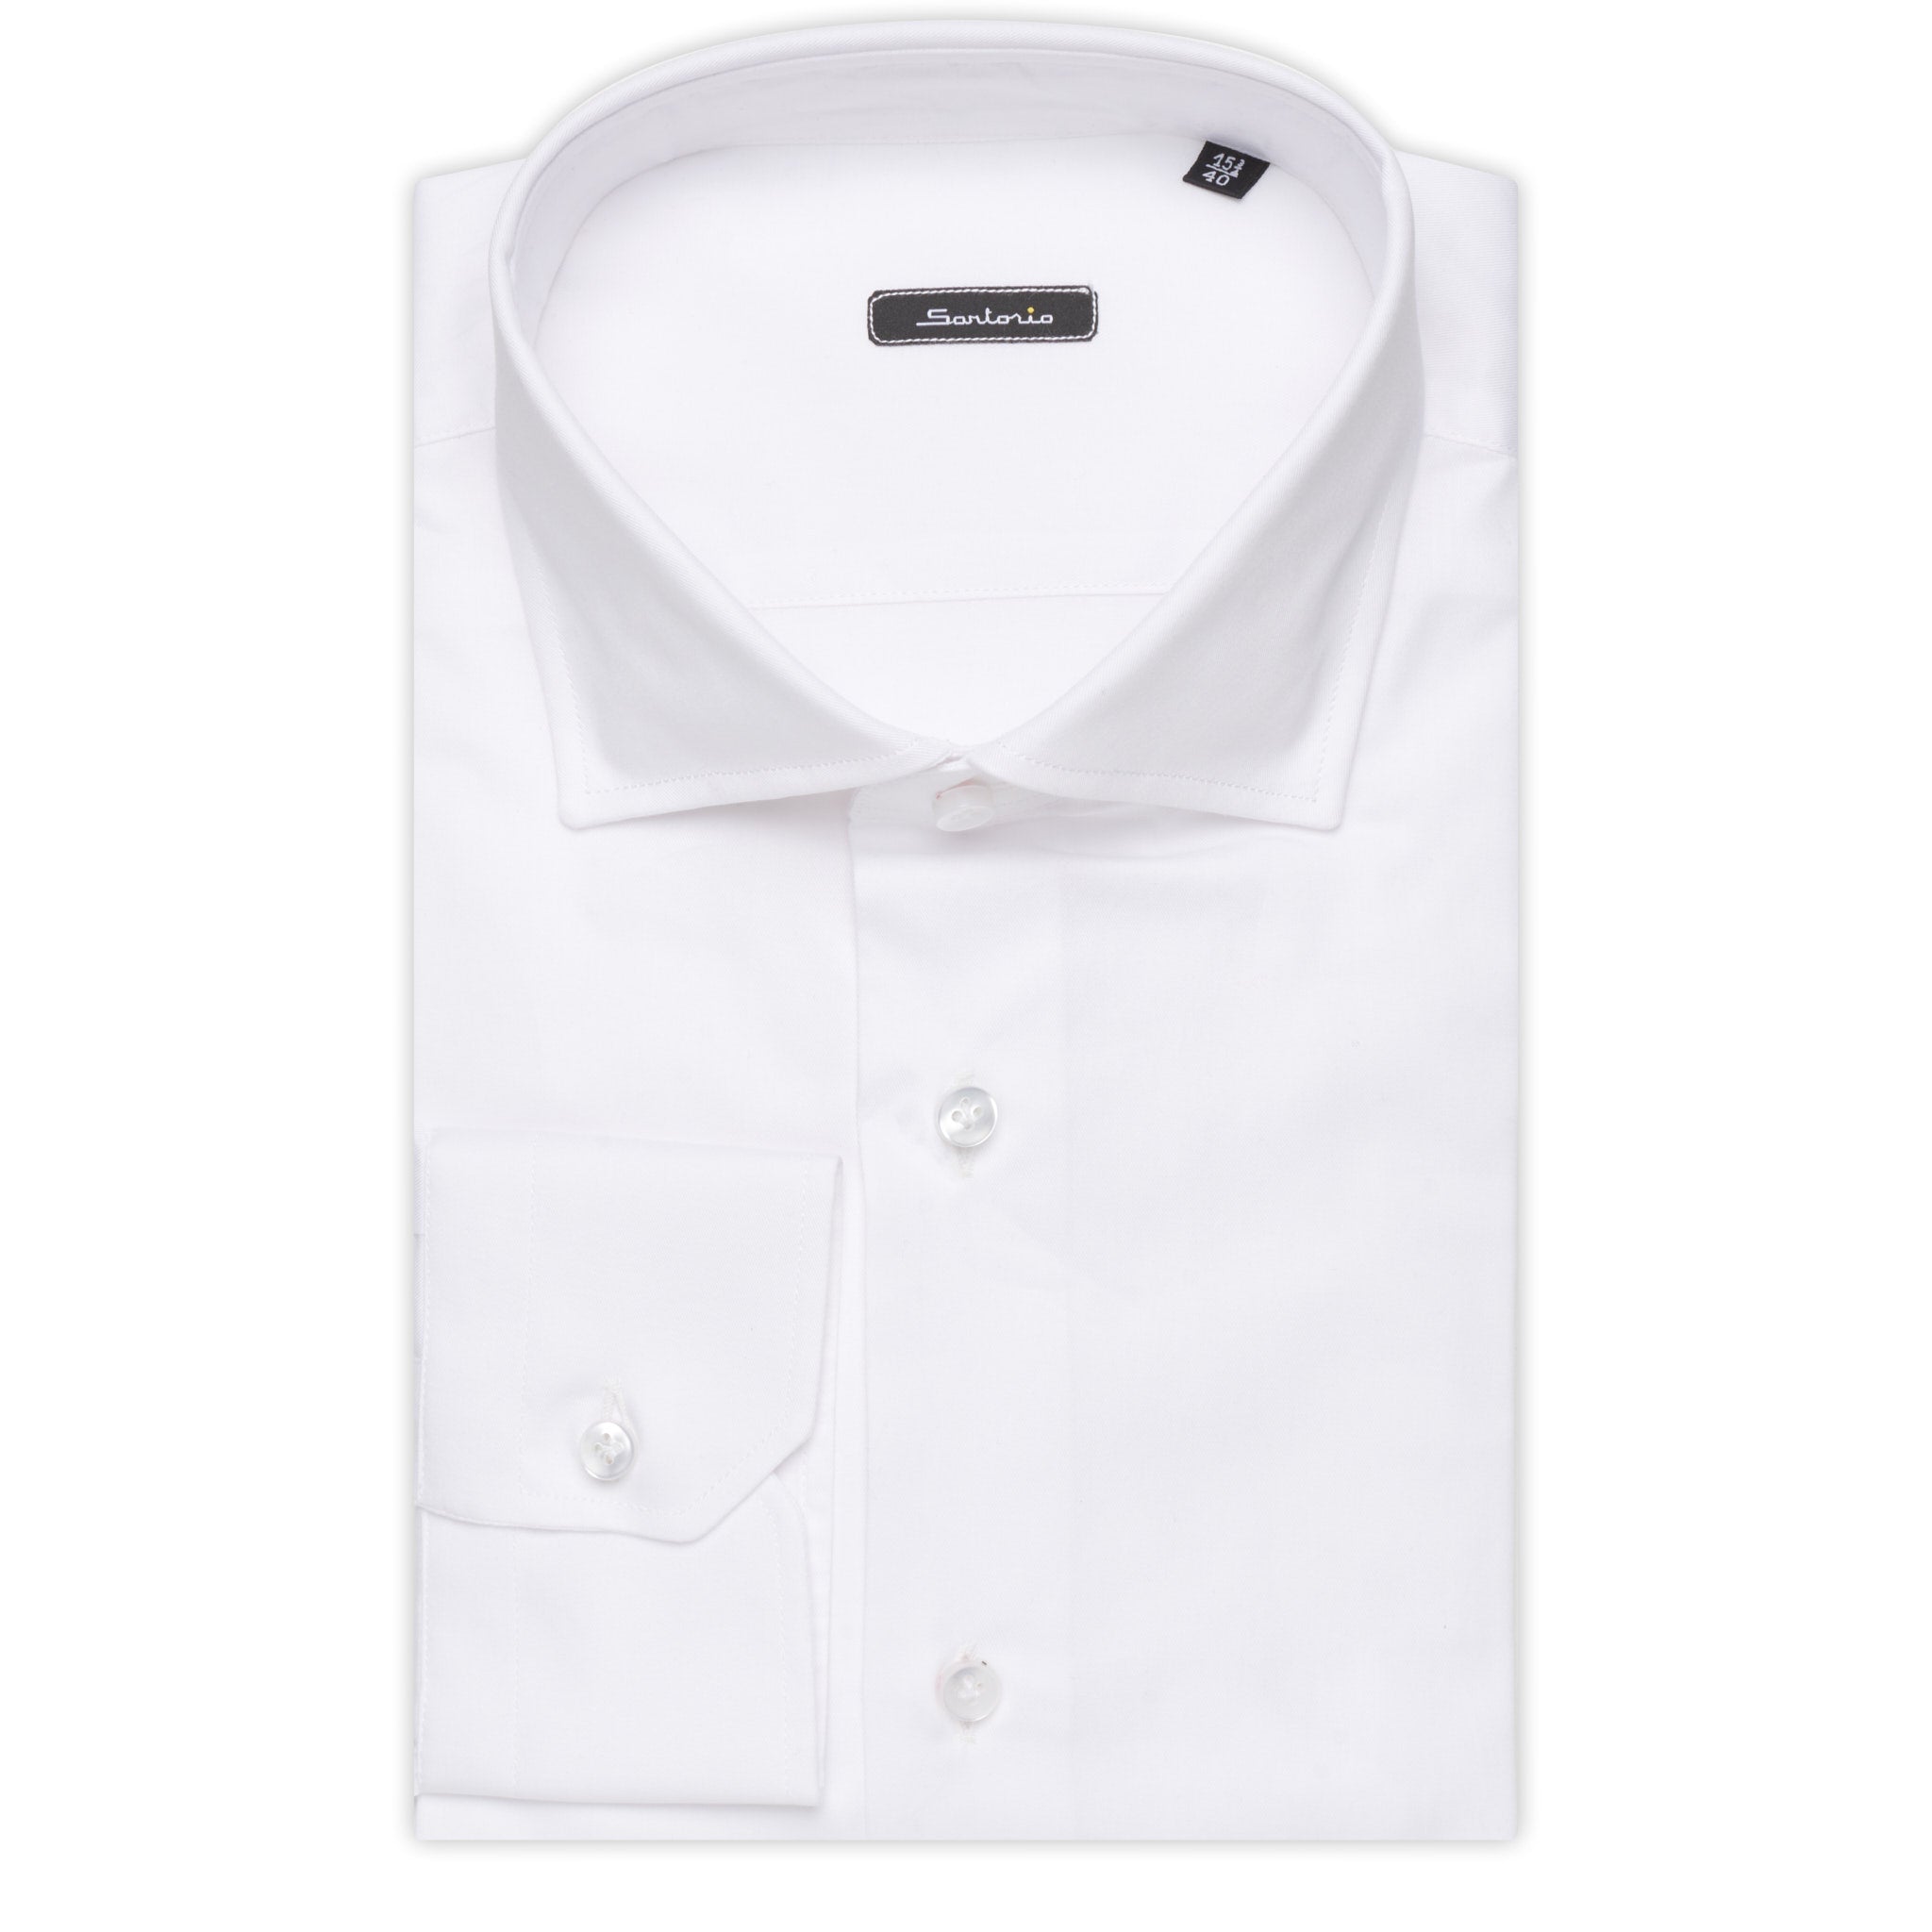 SARTORIO Napoli by KITON White Twill Cotton Dress Shirt NEW Slim Fit